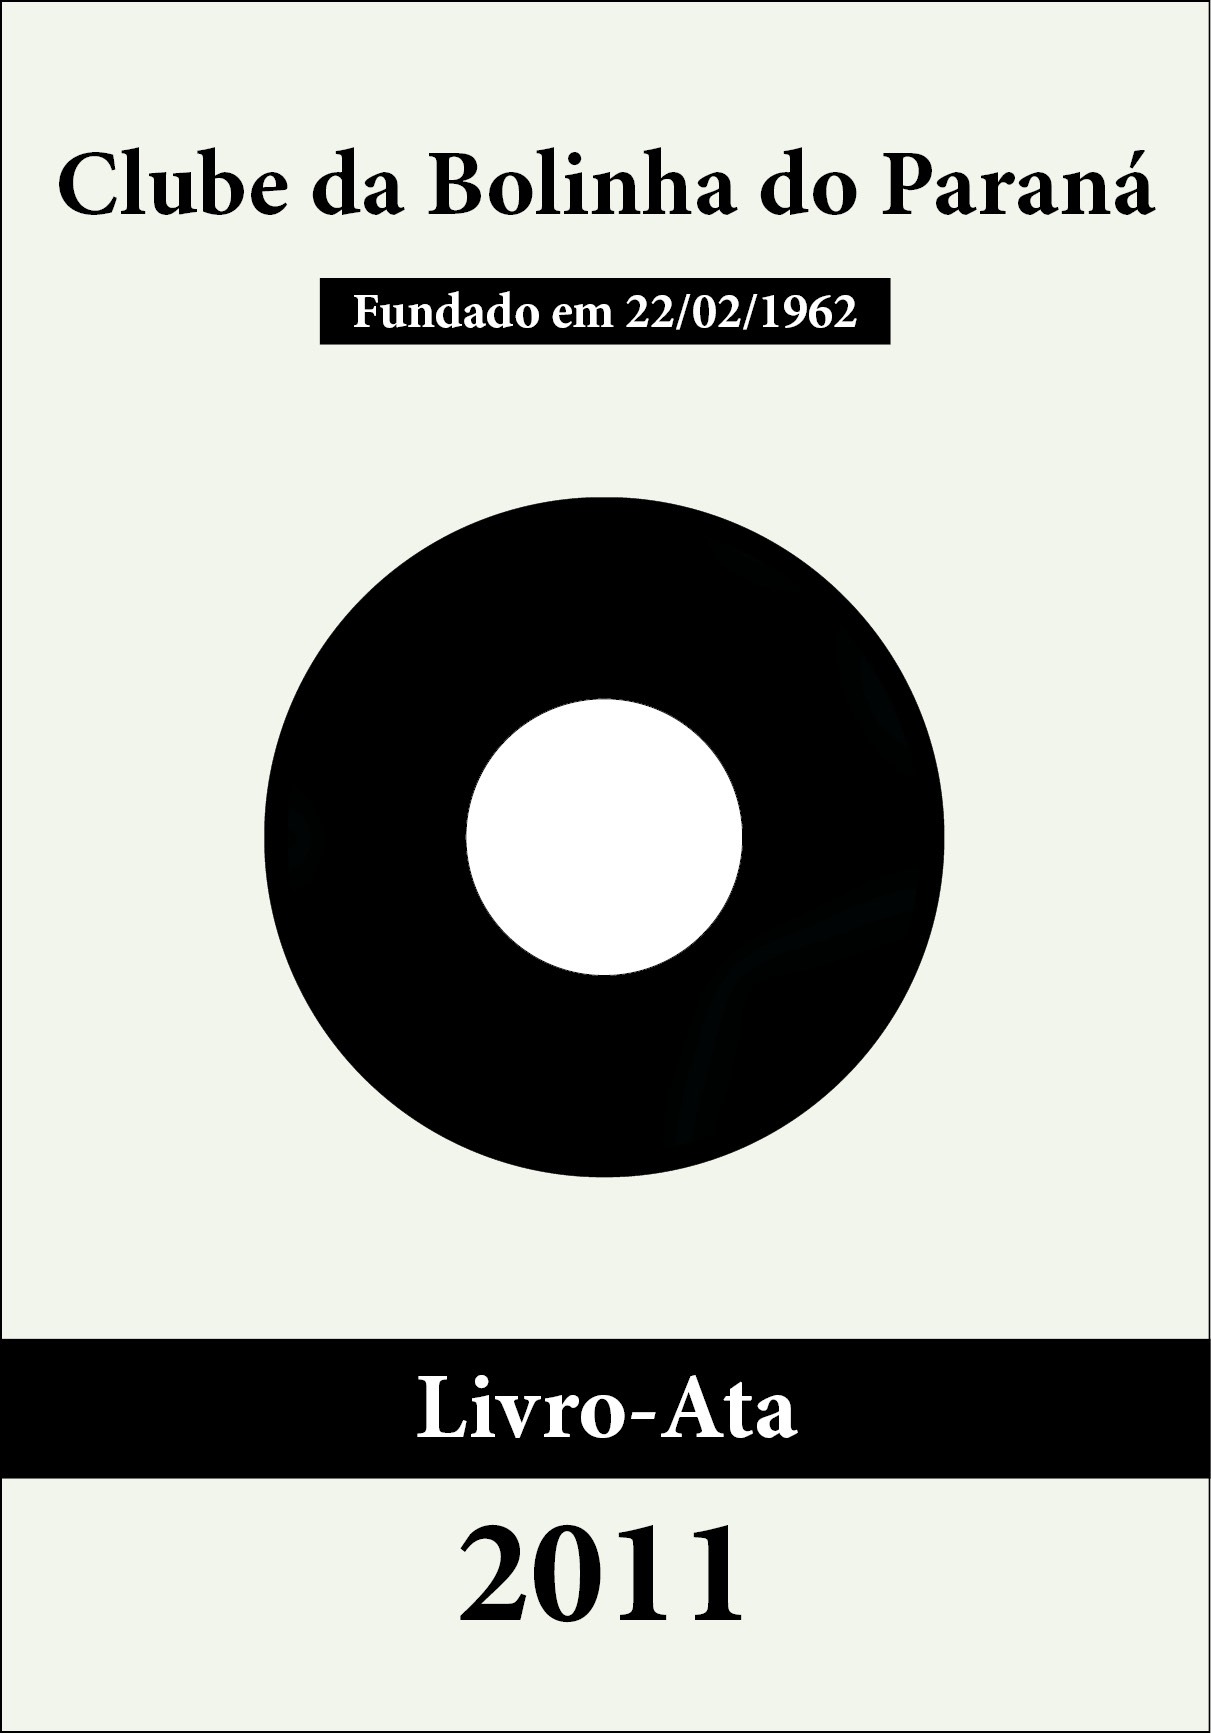 Bolinha - Livro-Ata 2011